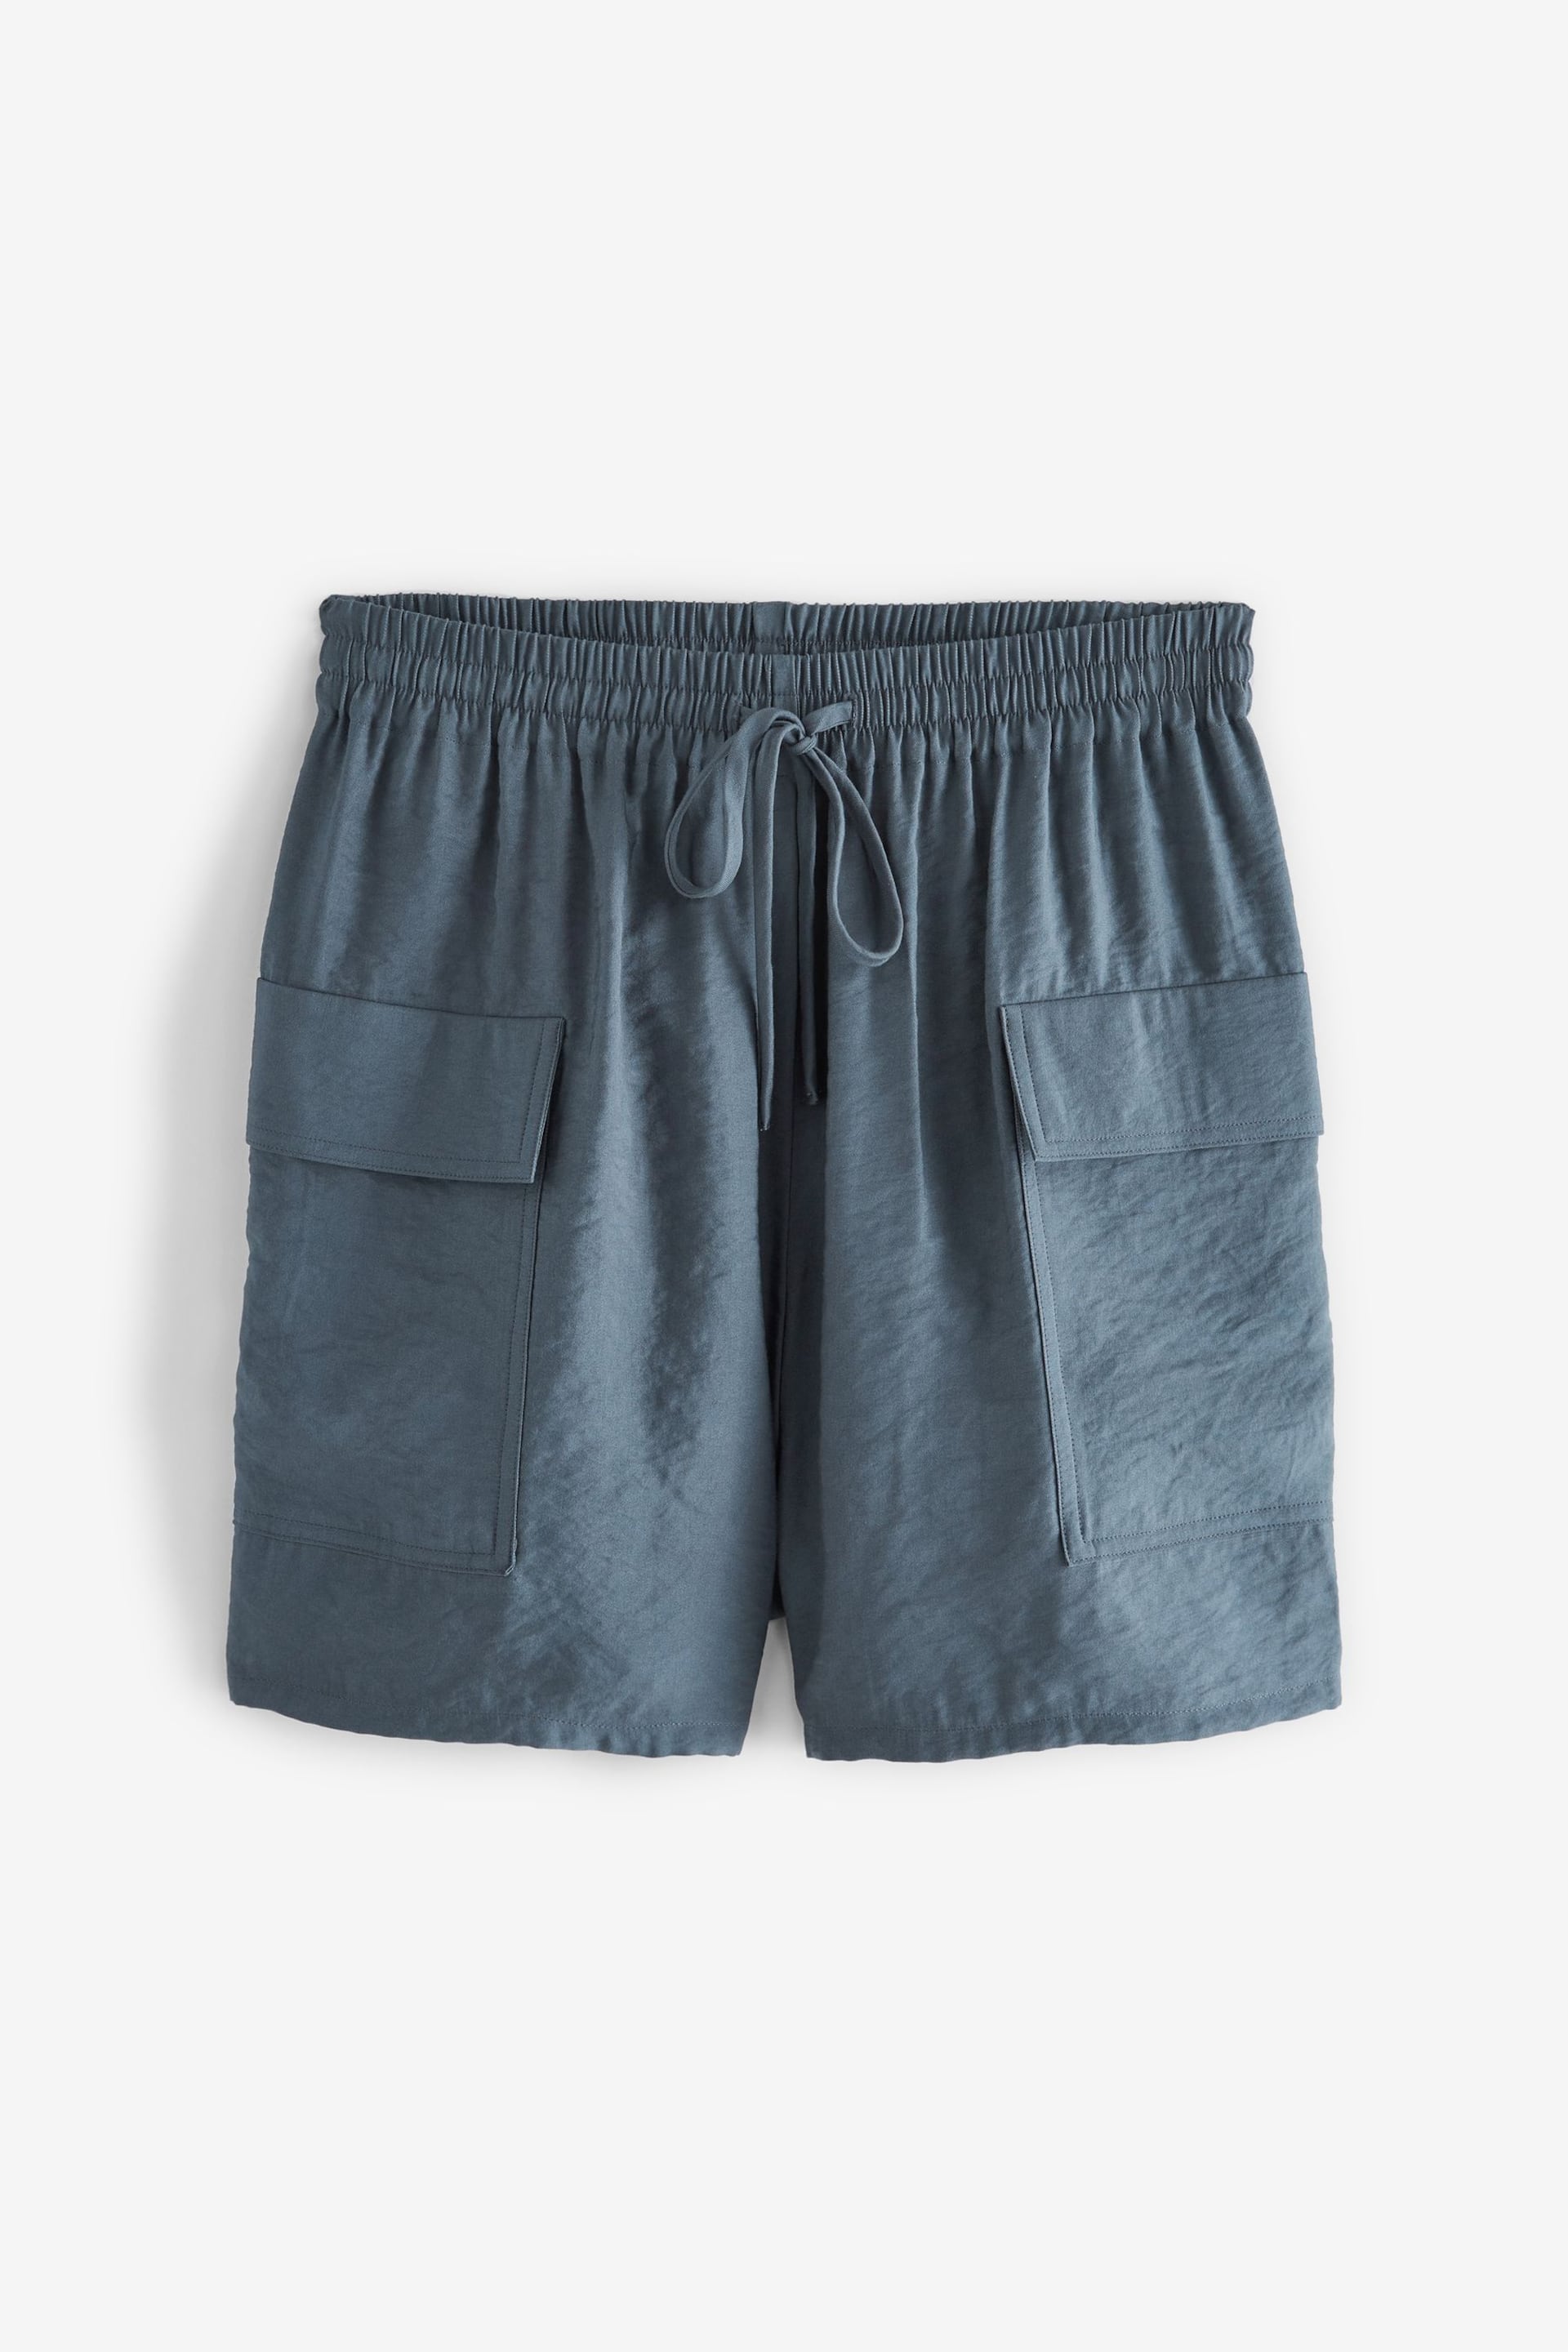 Grey Shine Utility Shorts with Pockets - Image 4 of 5